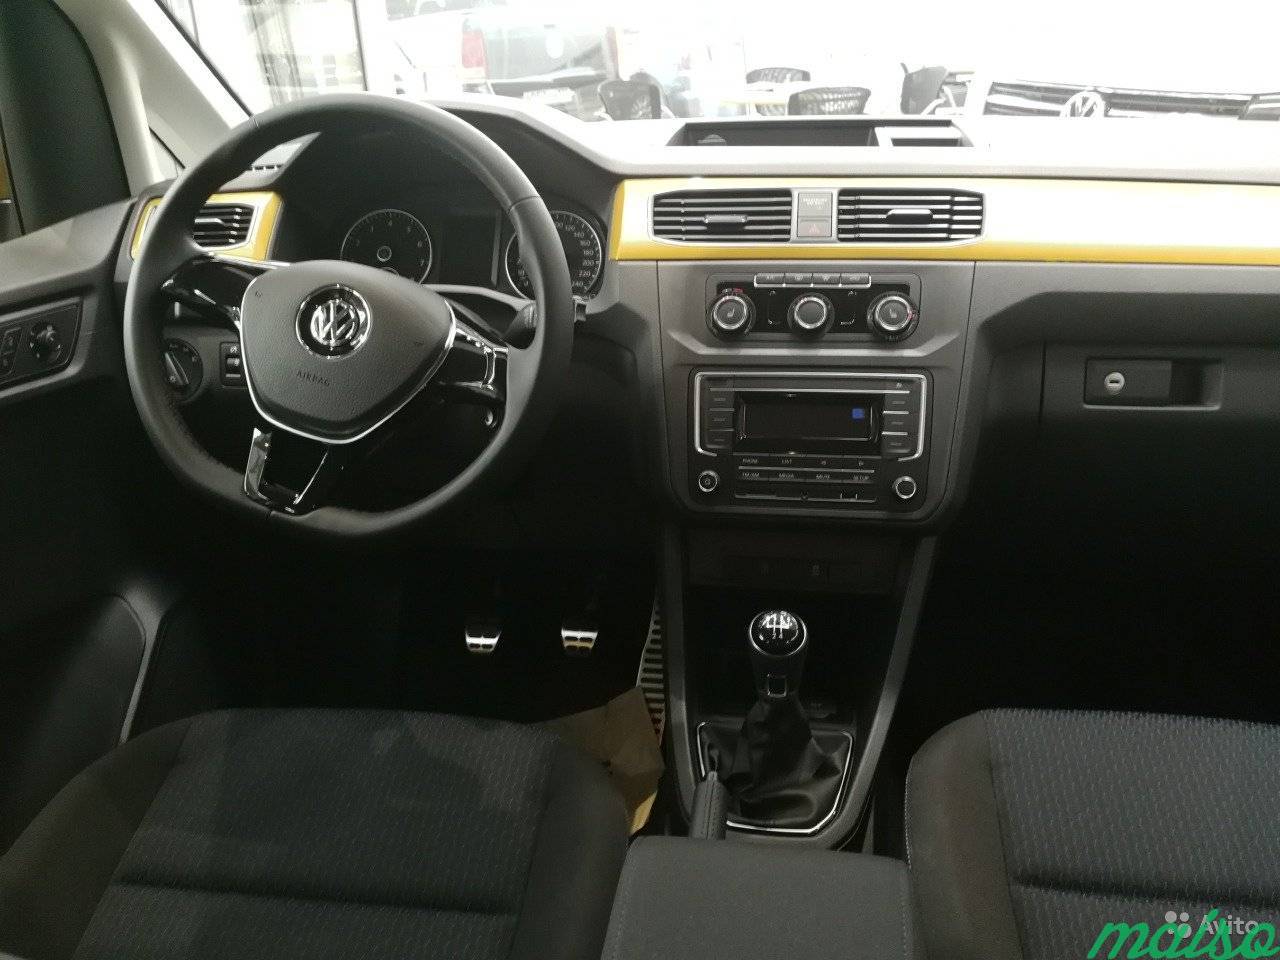 Volkswagen Caddy 1.6 МТ, 2018, минивэн в Санкт-Петербурге. Фото 6